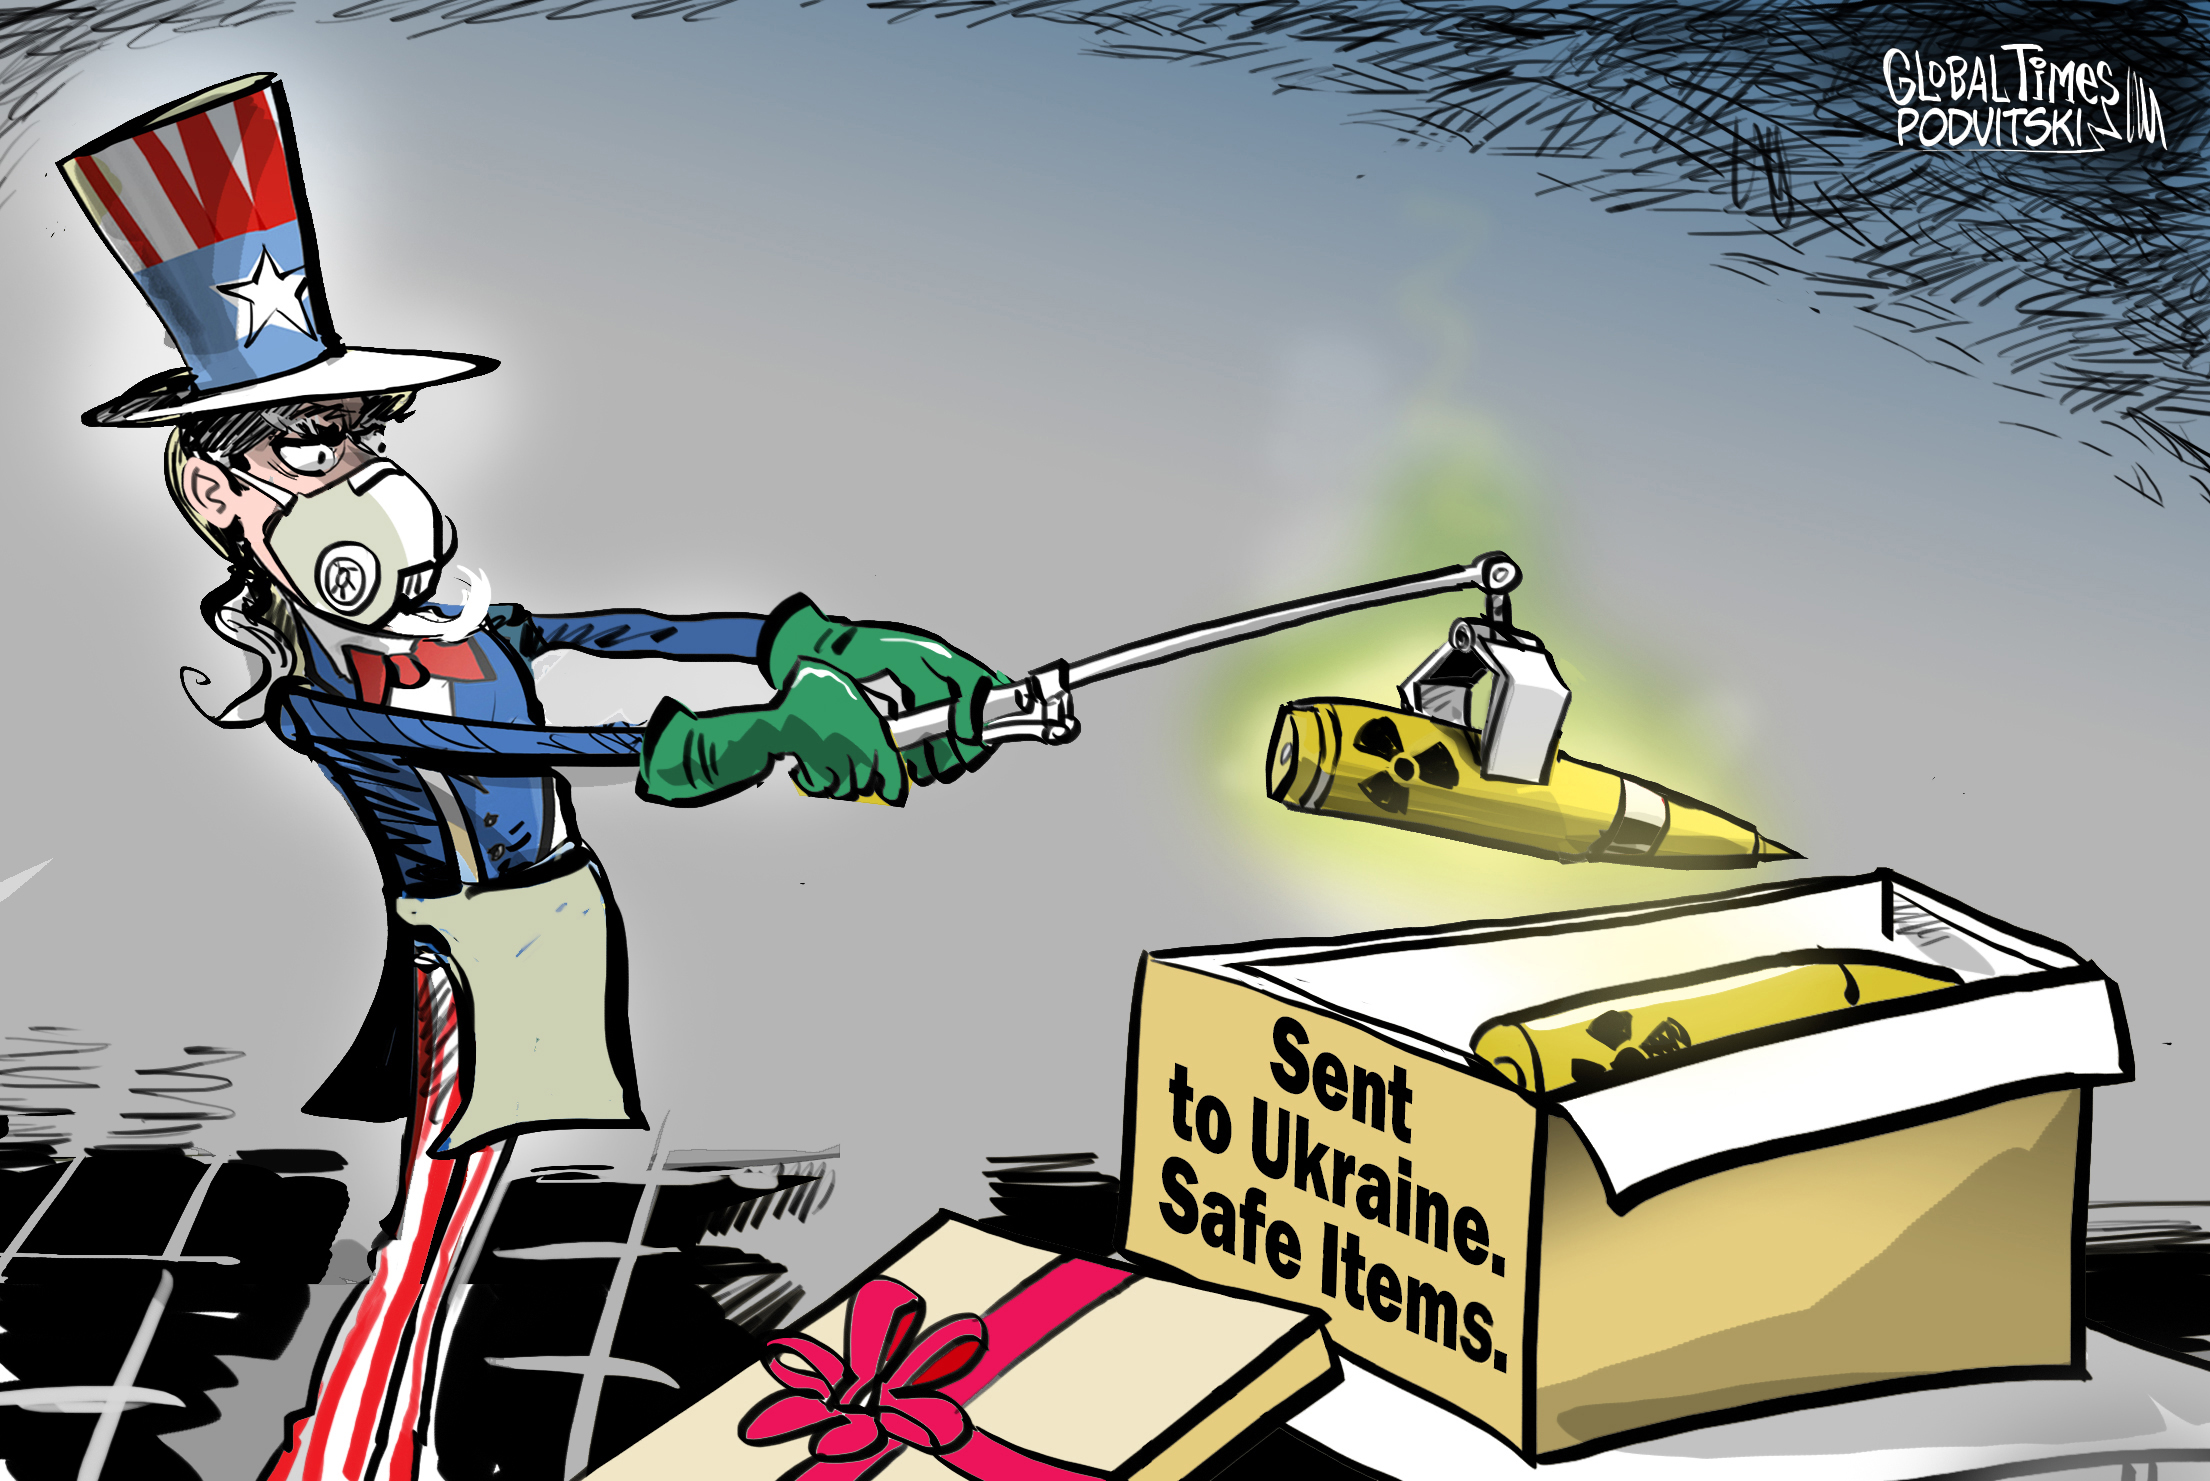 “This is a commonplace type of munition,” says John Kirby on US providing depleted uranium rounds to Ukraine. Cartoon: Vitaly Podvitski